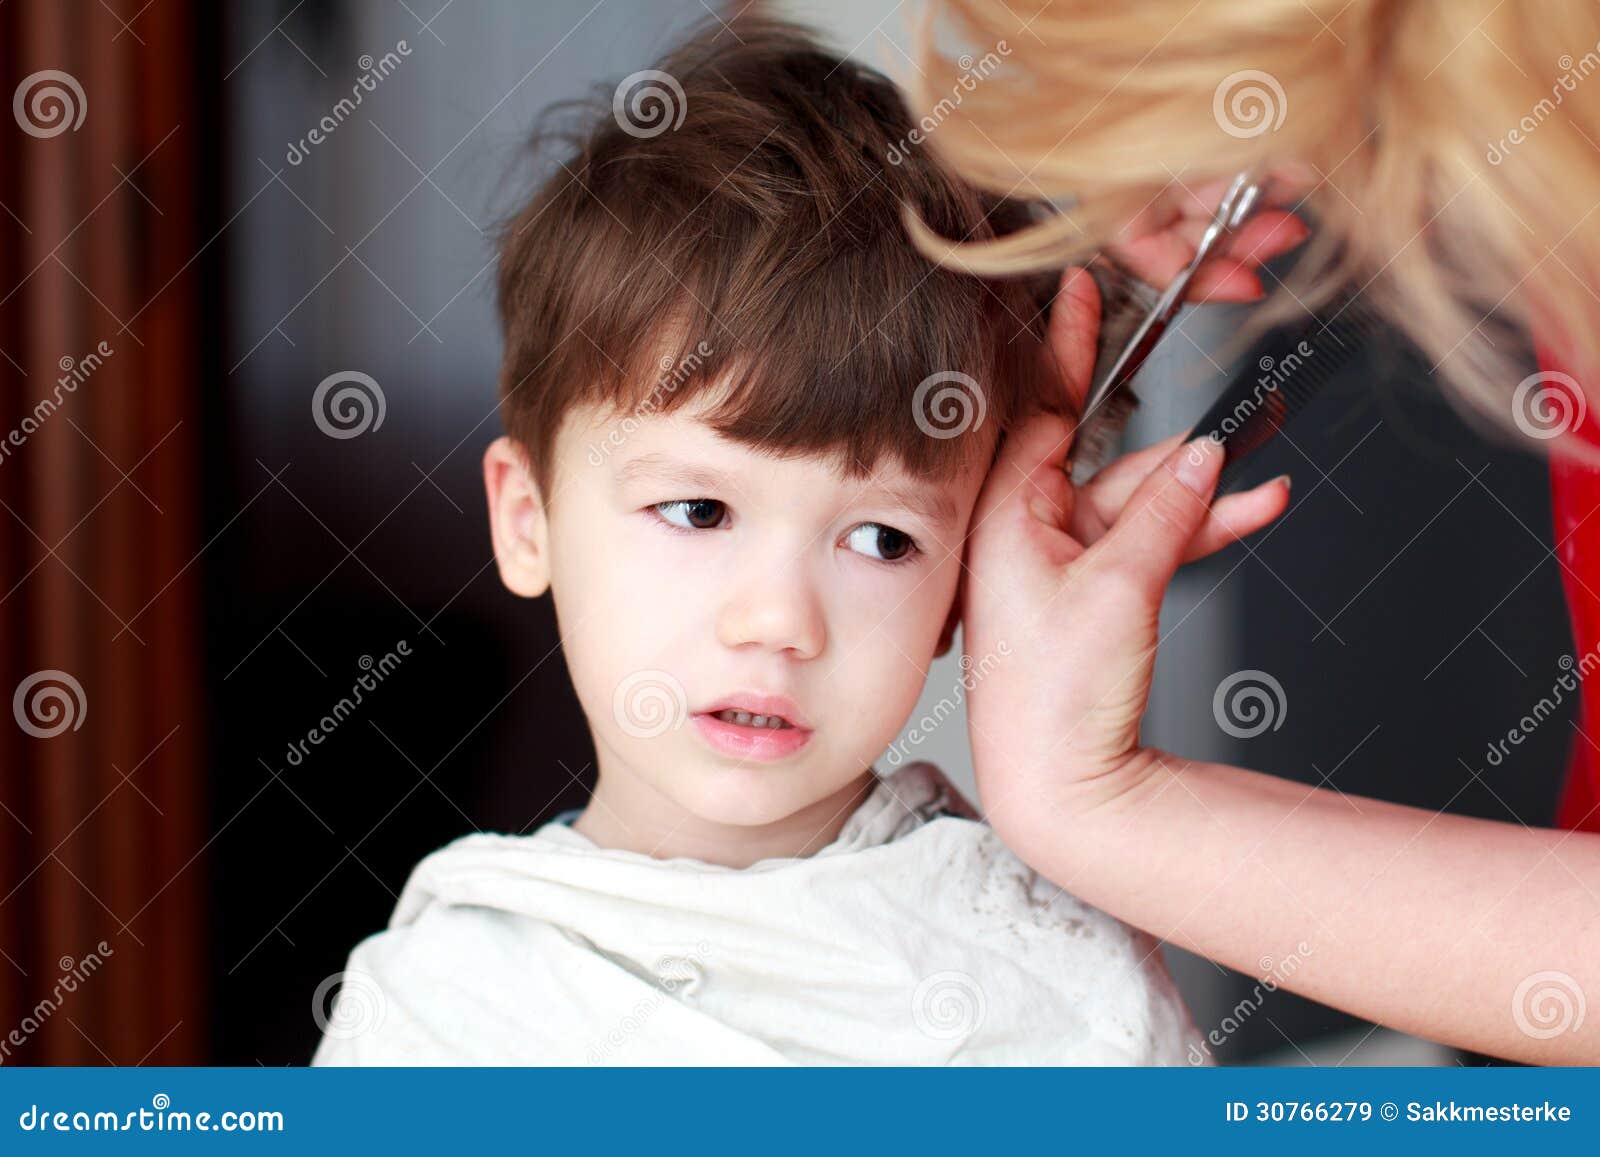 理发师给小女孩剪了个时髦的发型 库存照片. 图片 包括有 男朋友, 女孩, 特写镜头, 生活方式, 家庭 - 196416950